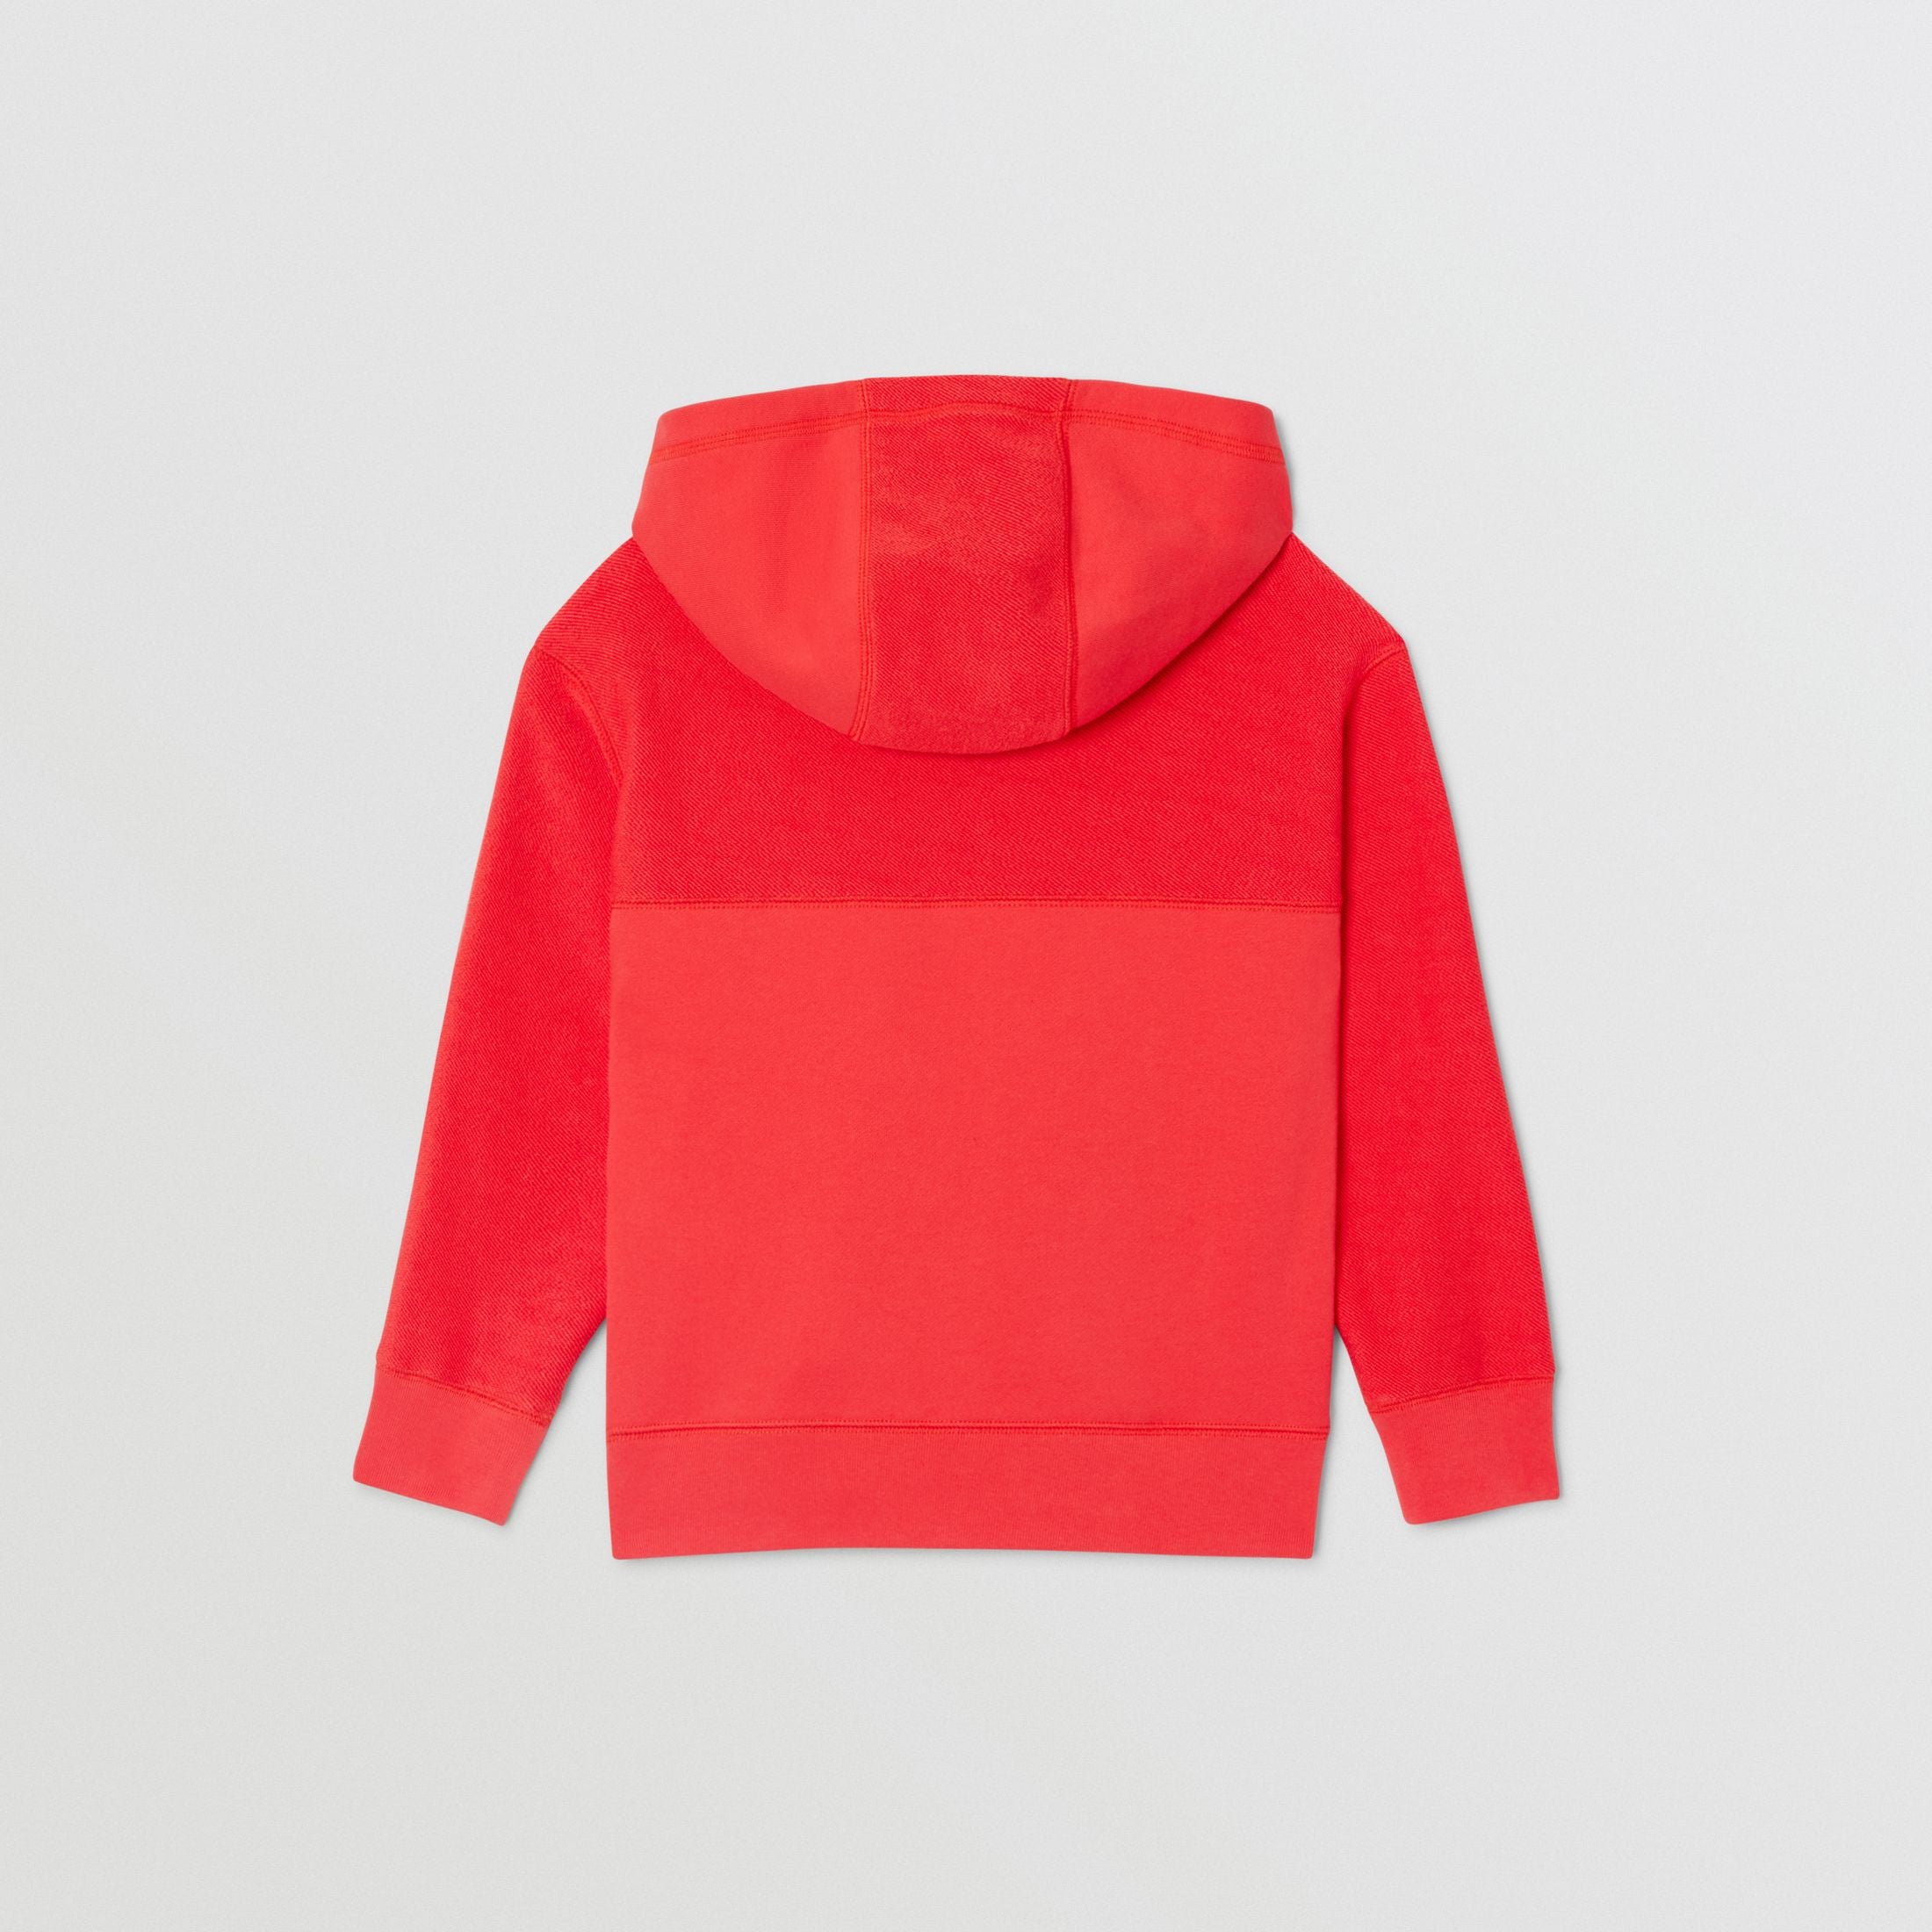 Boys Red Zip Cotton Sweatshirt